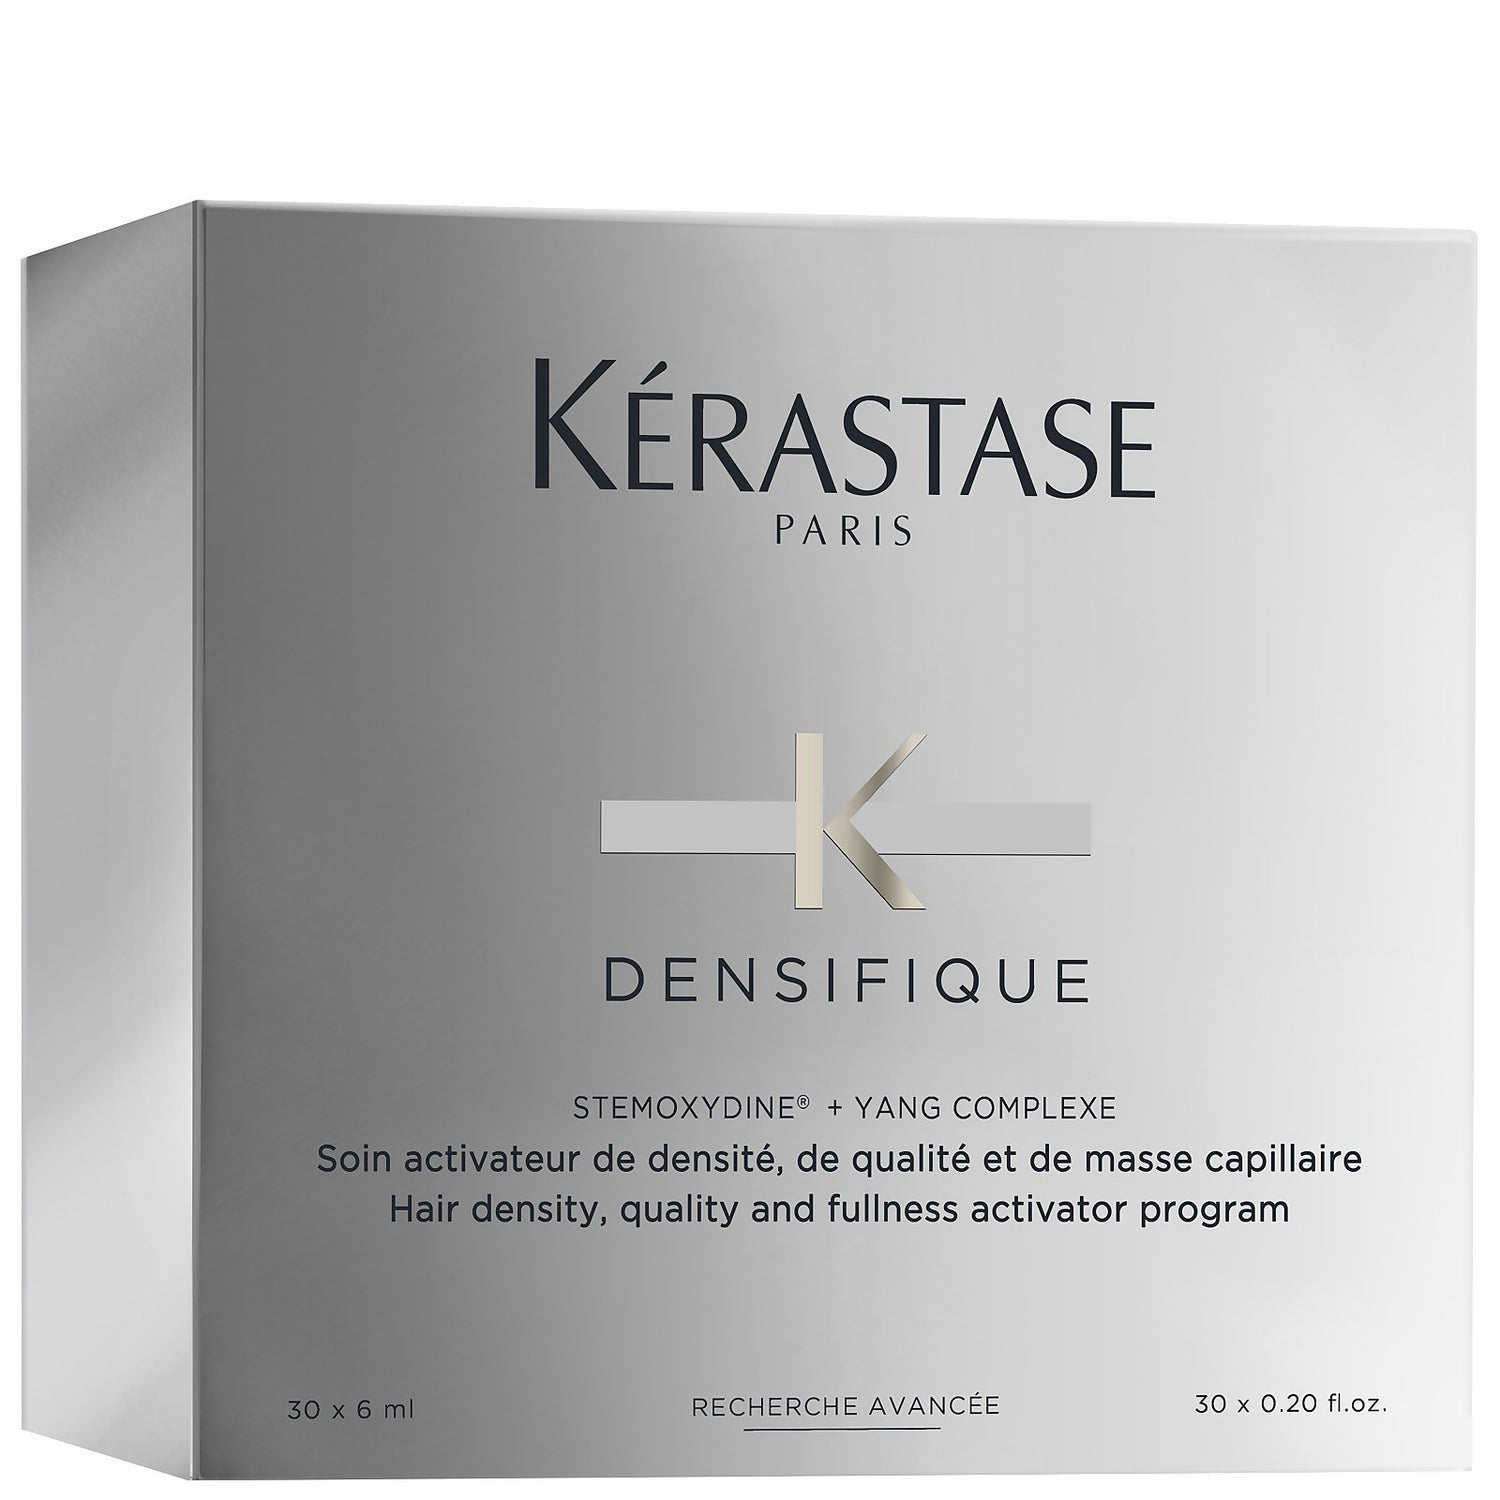 Kérastase Densifique Hair Density, Quality Fullness Programme 30 6ml - allbeauty